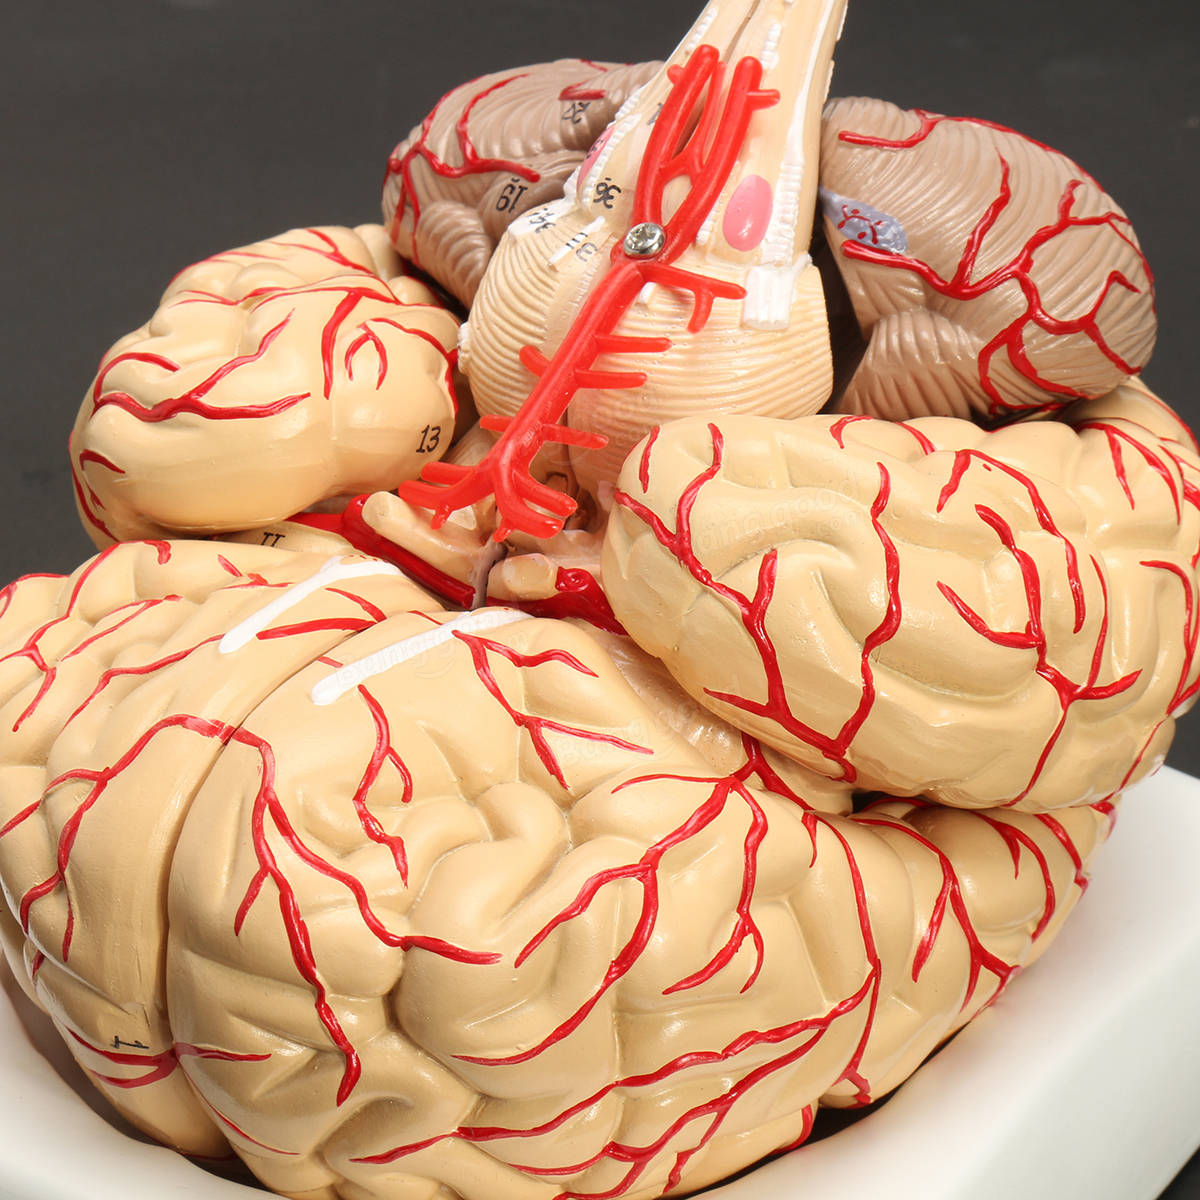 Купить мозг авито. Анатомическая модель головного мозга. Анатомическая модель мозга человека в натуральную величину.